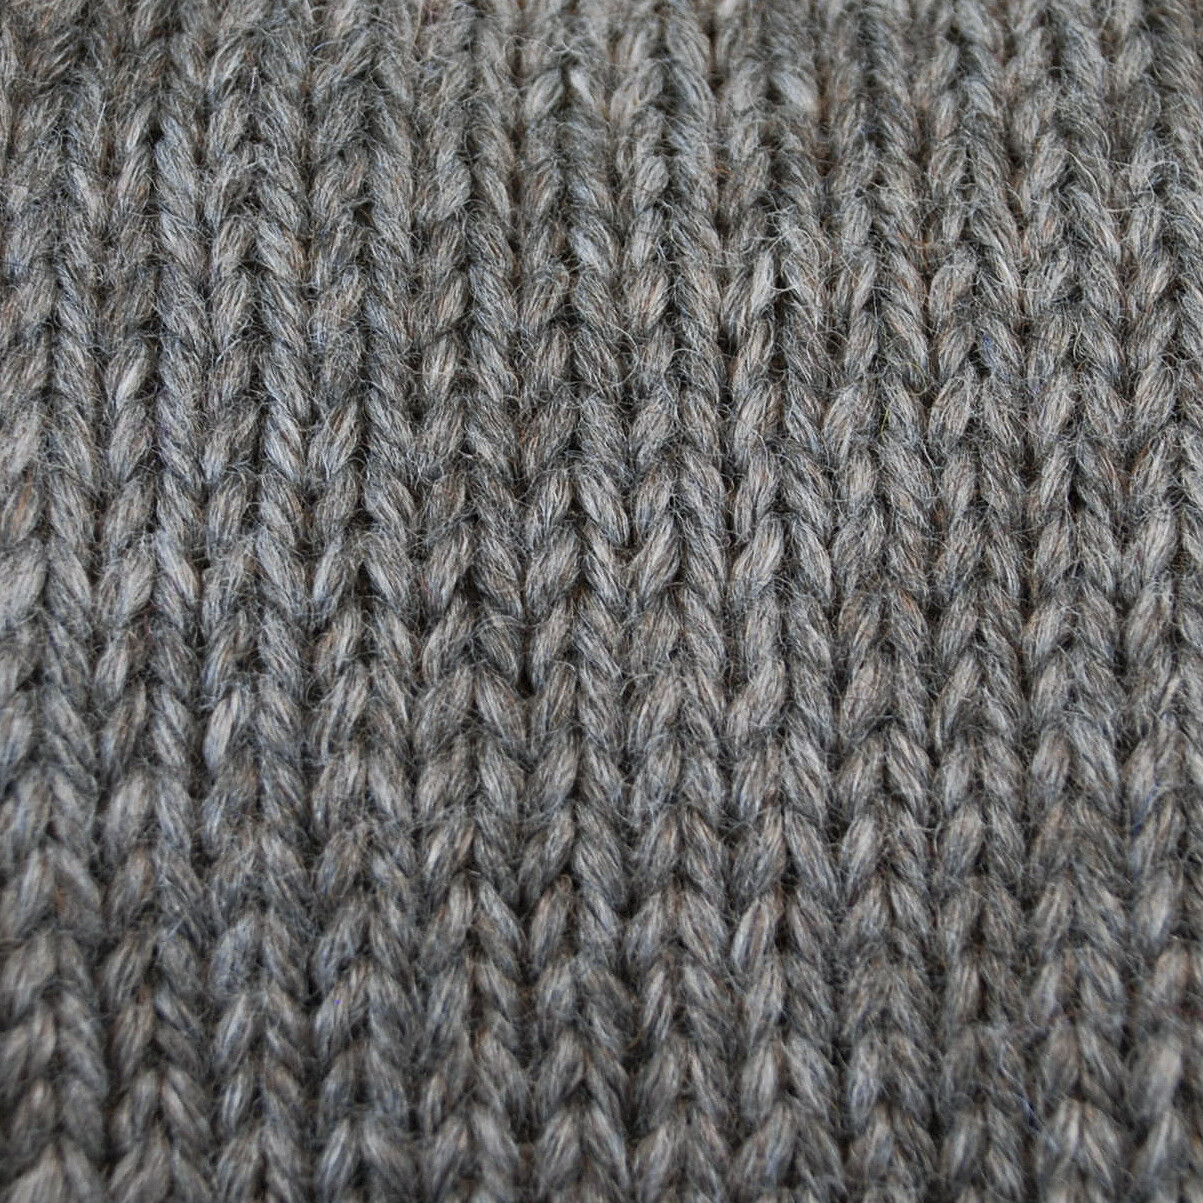 Snuggle Yarn - Gray Heather